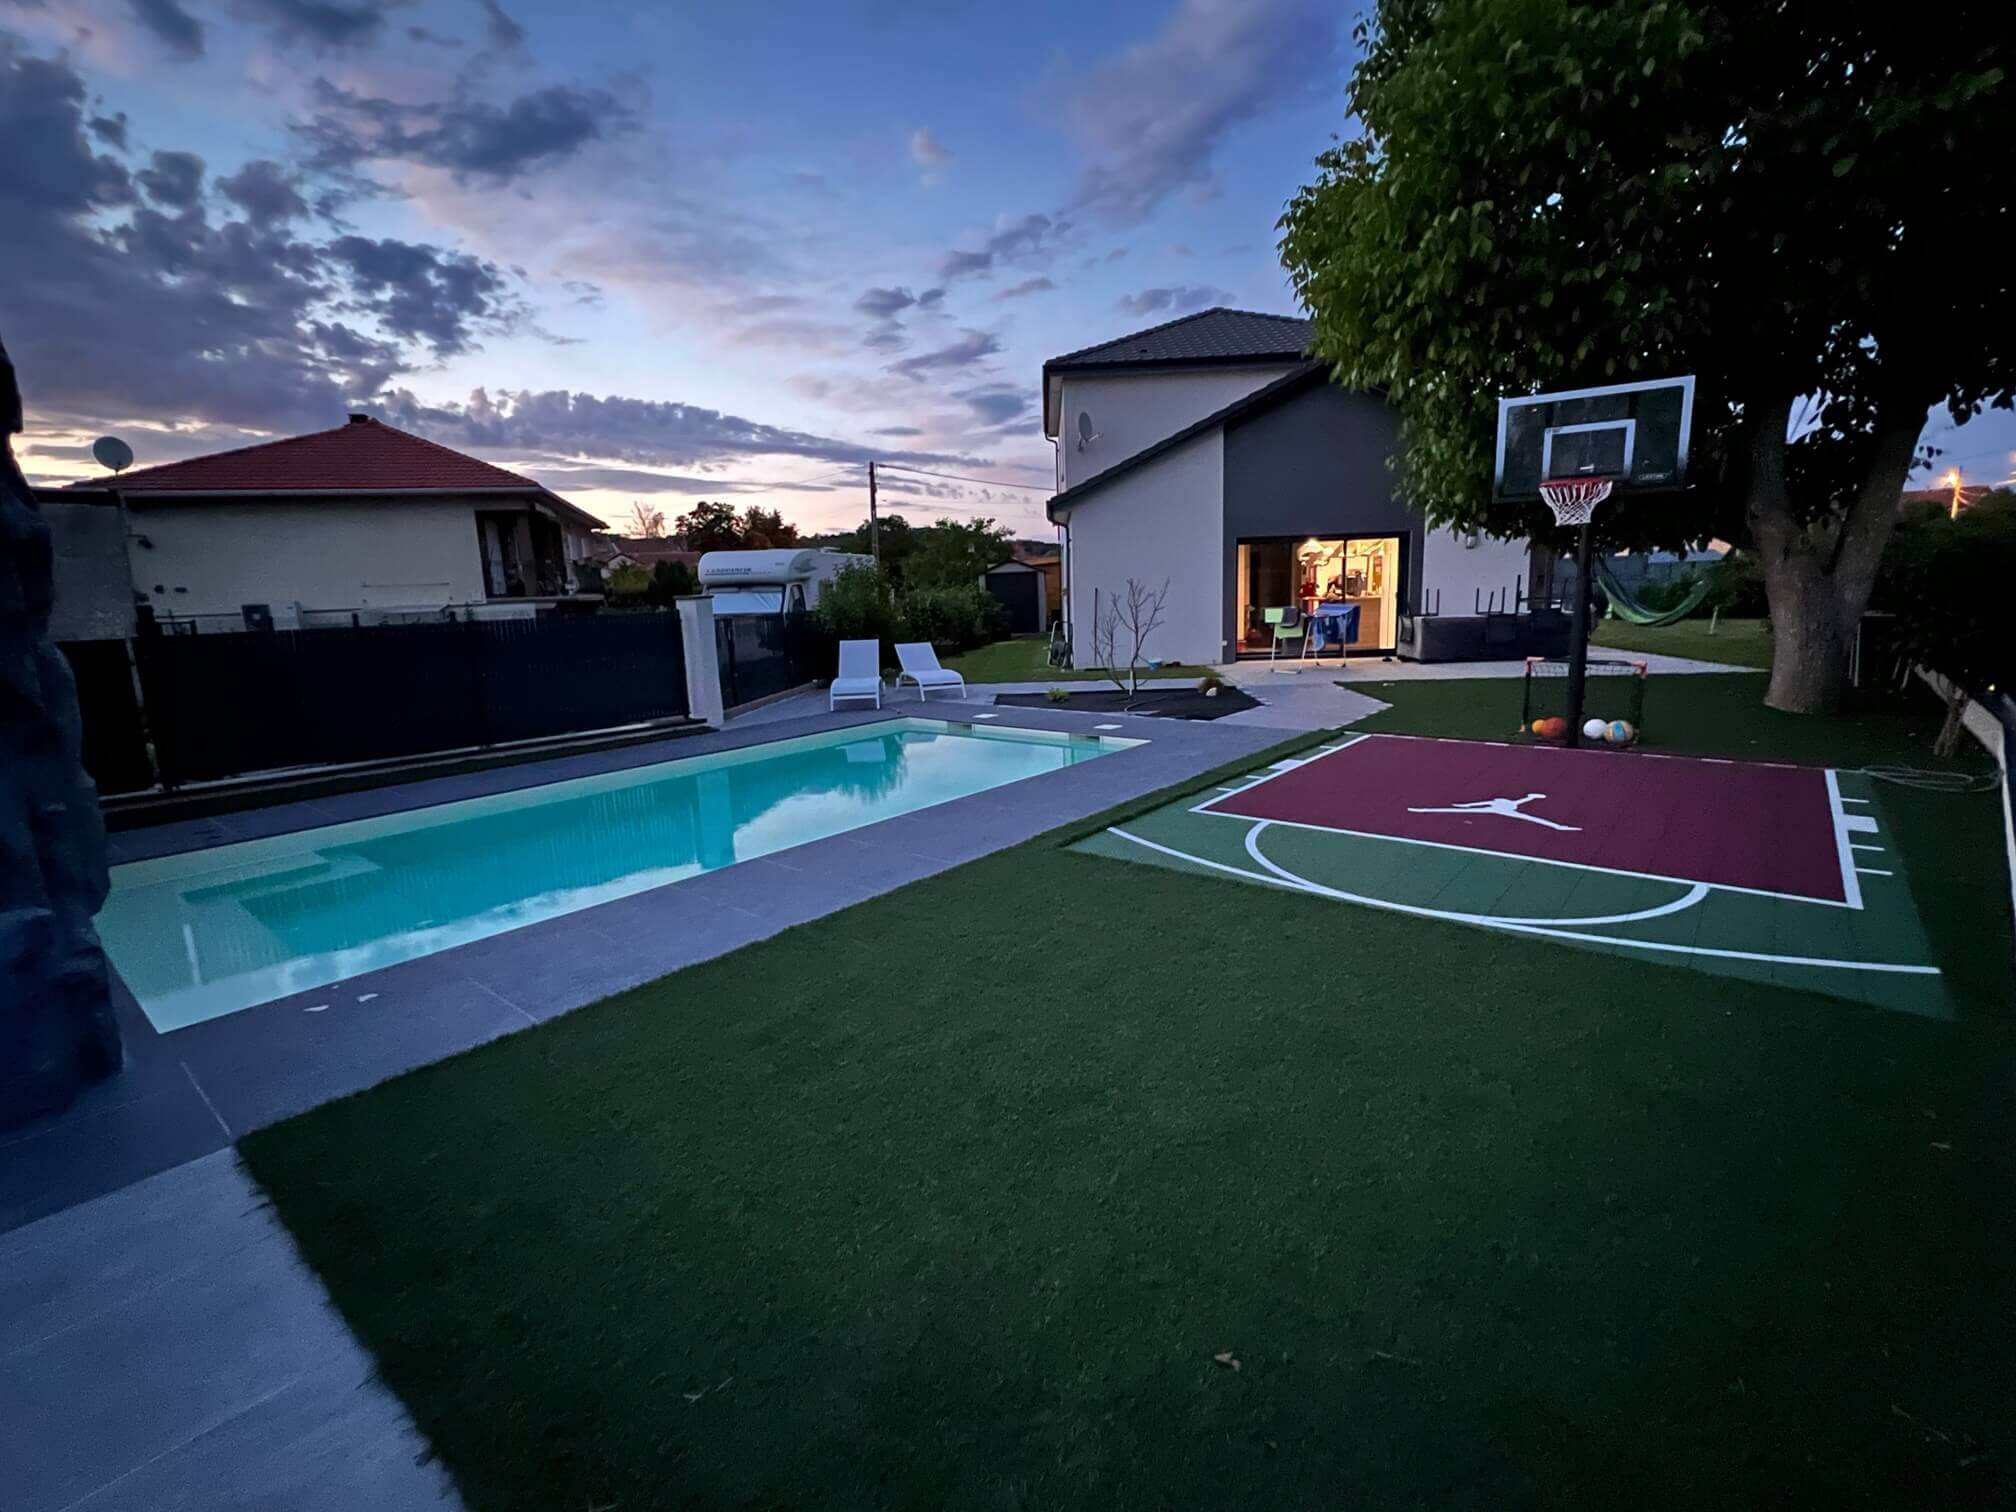 Terrain de basket où piscine dans le jardin ? Le choix